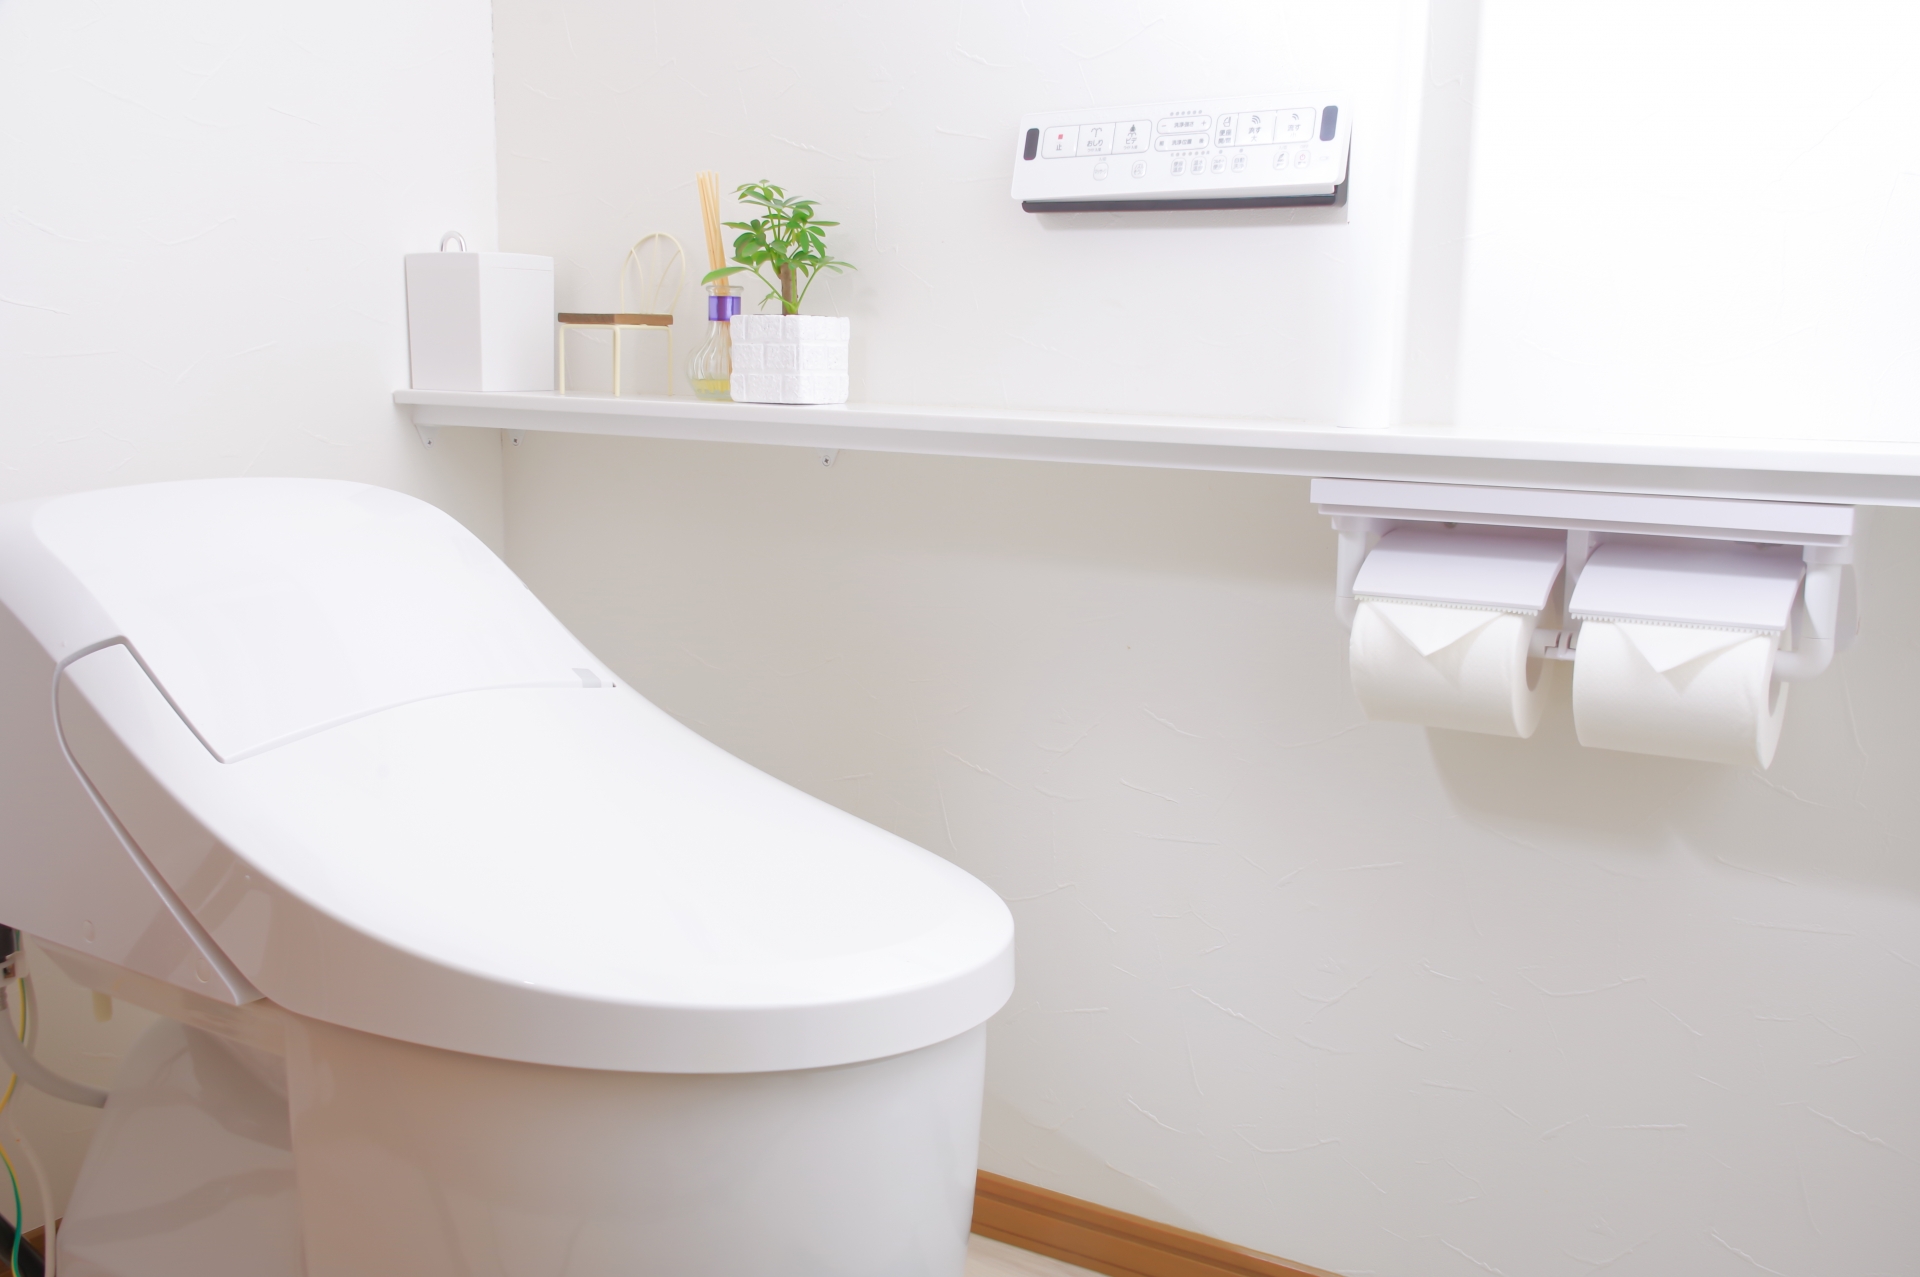 狭いトイレの壁紙どうやって選ぶ 無垢 漆喰 珪藻土 自然素材の内装材ブログ アトピッコハウス